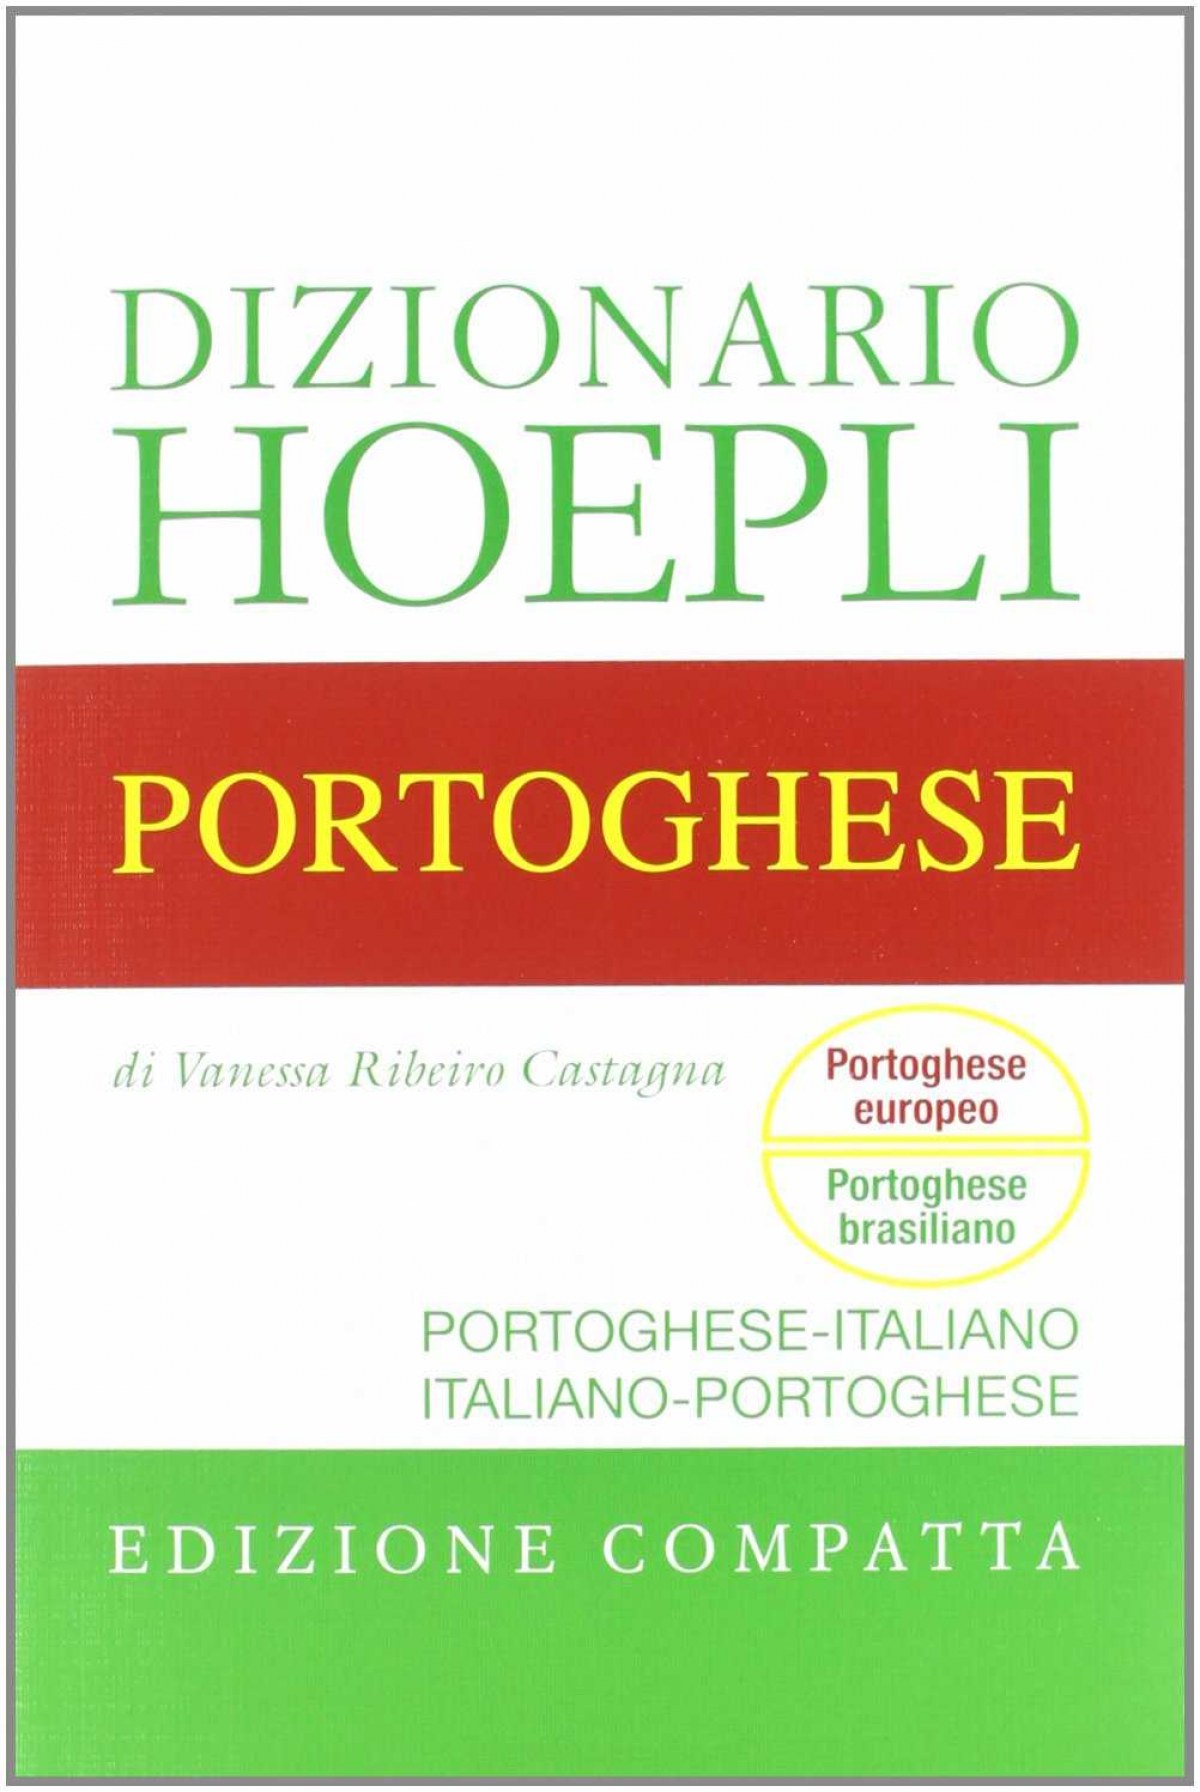 Dizionario di Portoghese. Edizione compatta - Vv.Aa.